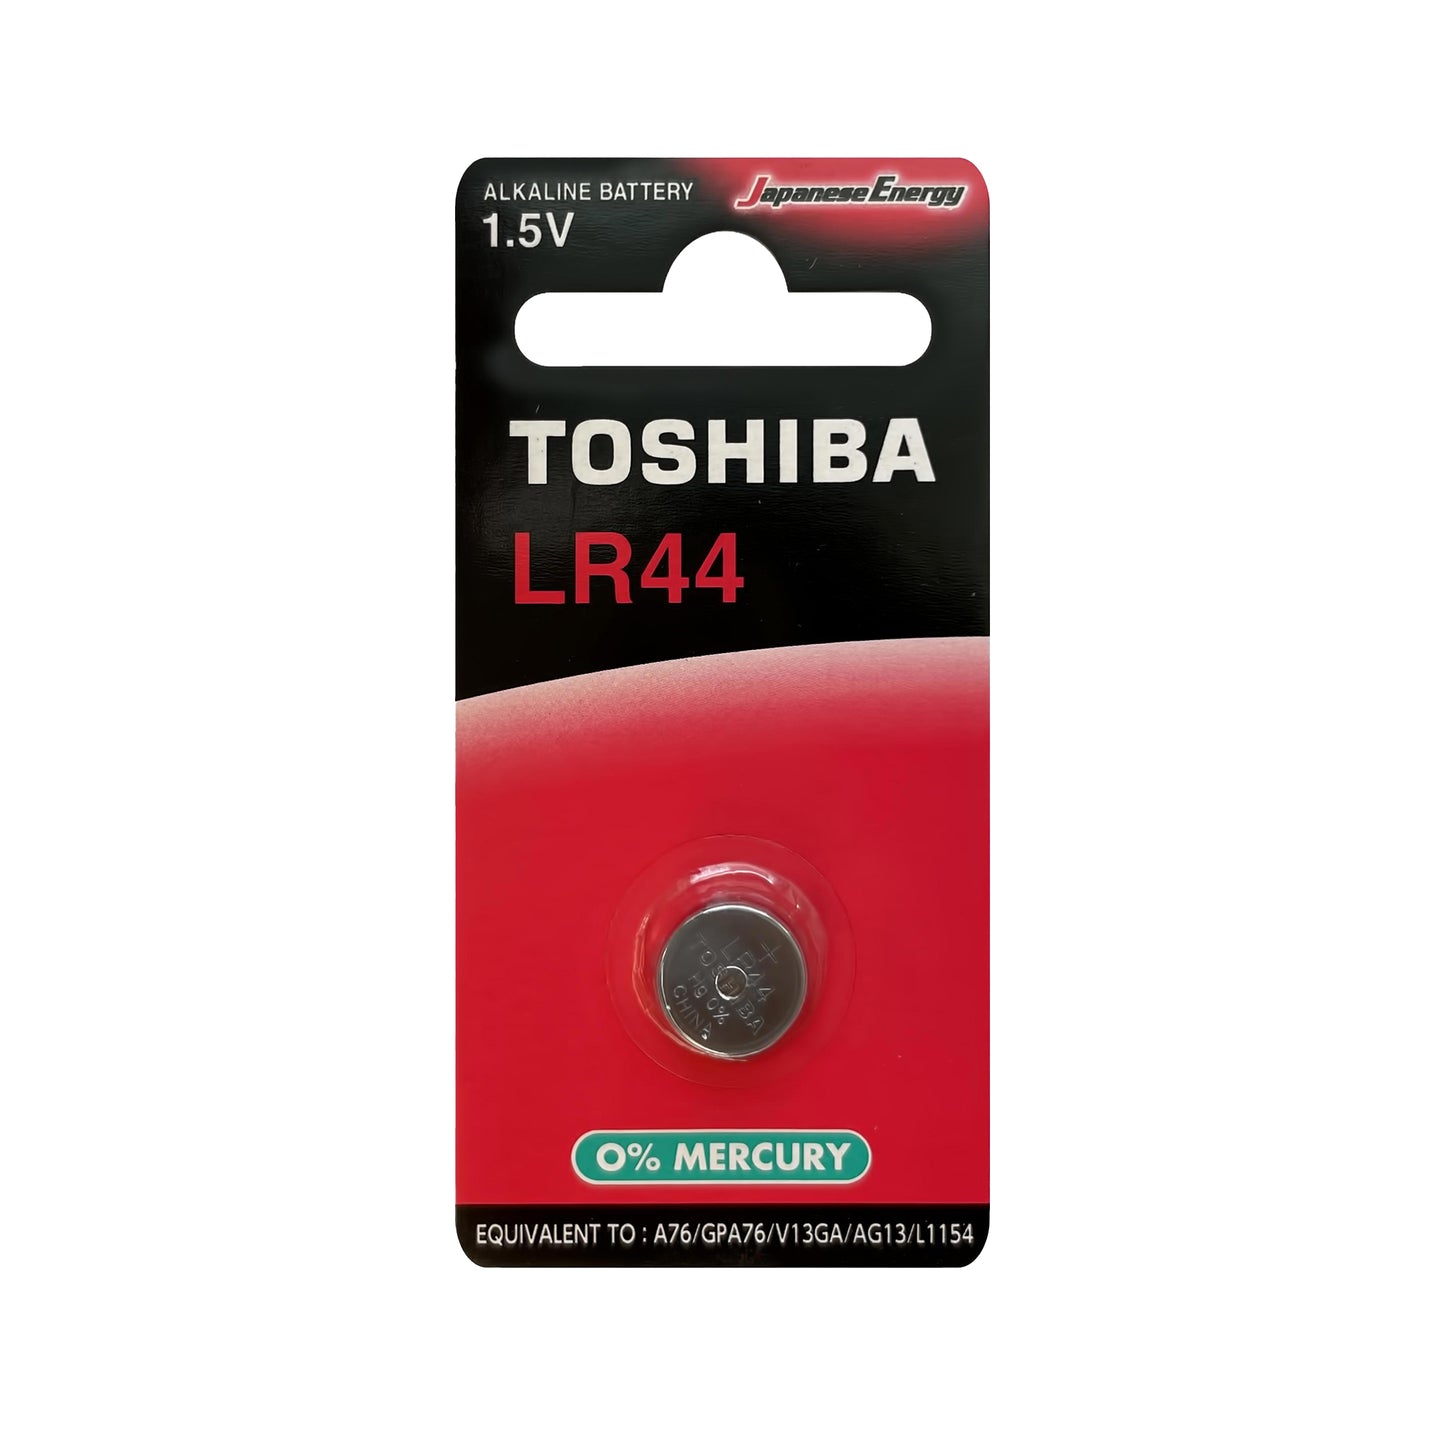 TSH-LR44-1 - батарейка Toshiba, тип LR44, 1.5 В (1 шт. в блистере)